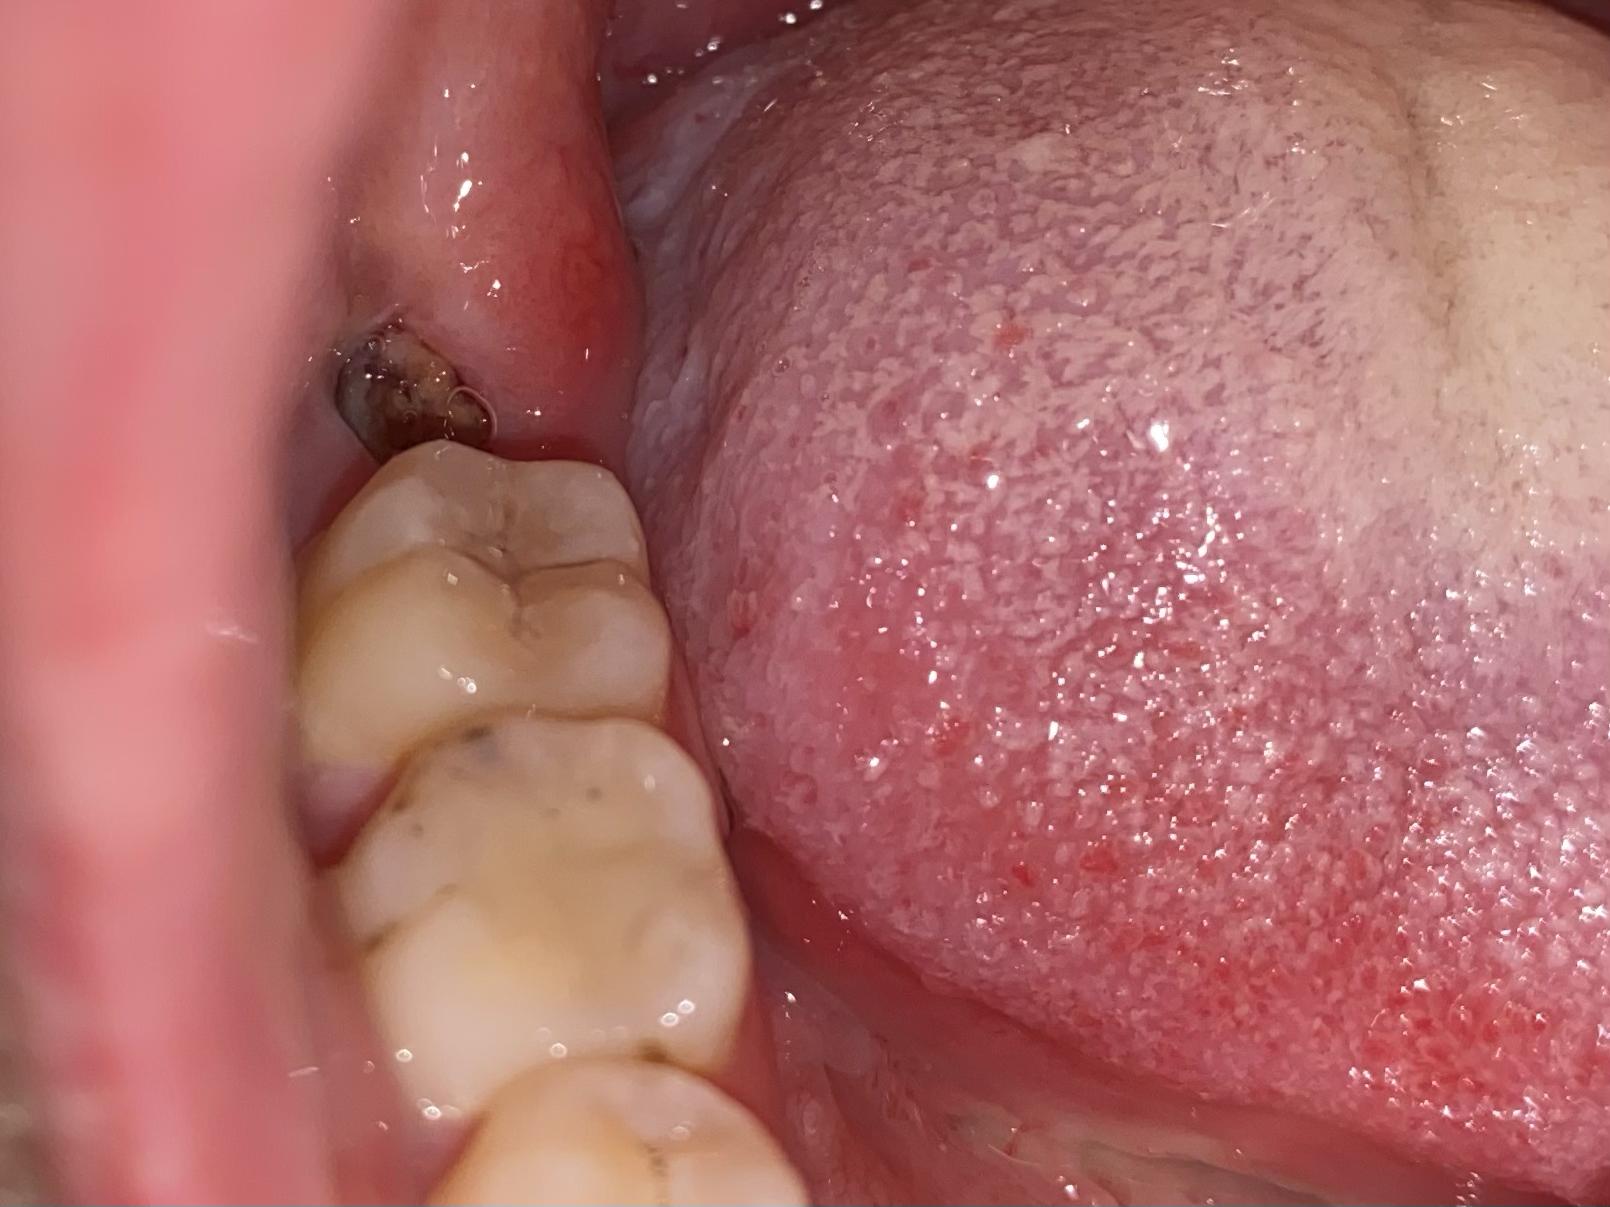 拔牙7天后牙窝状态图图片